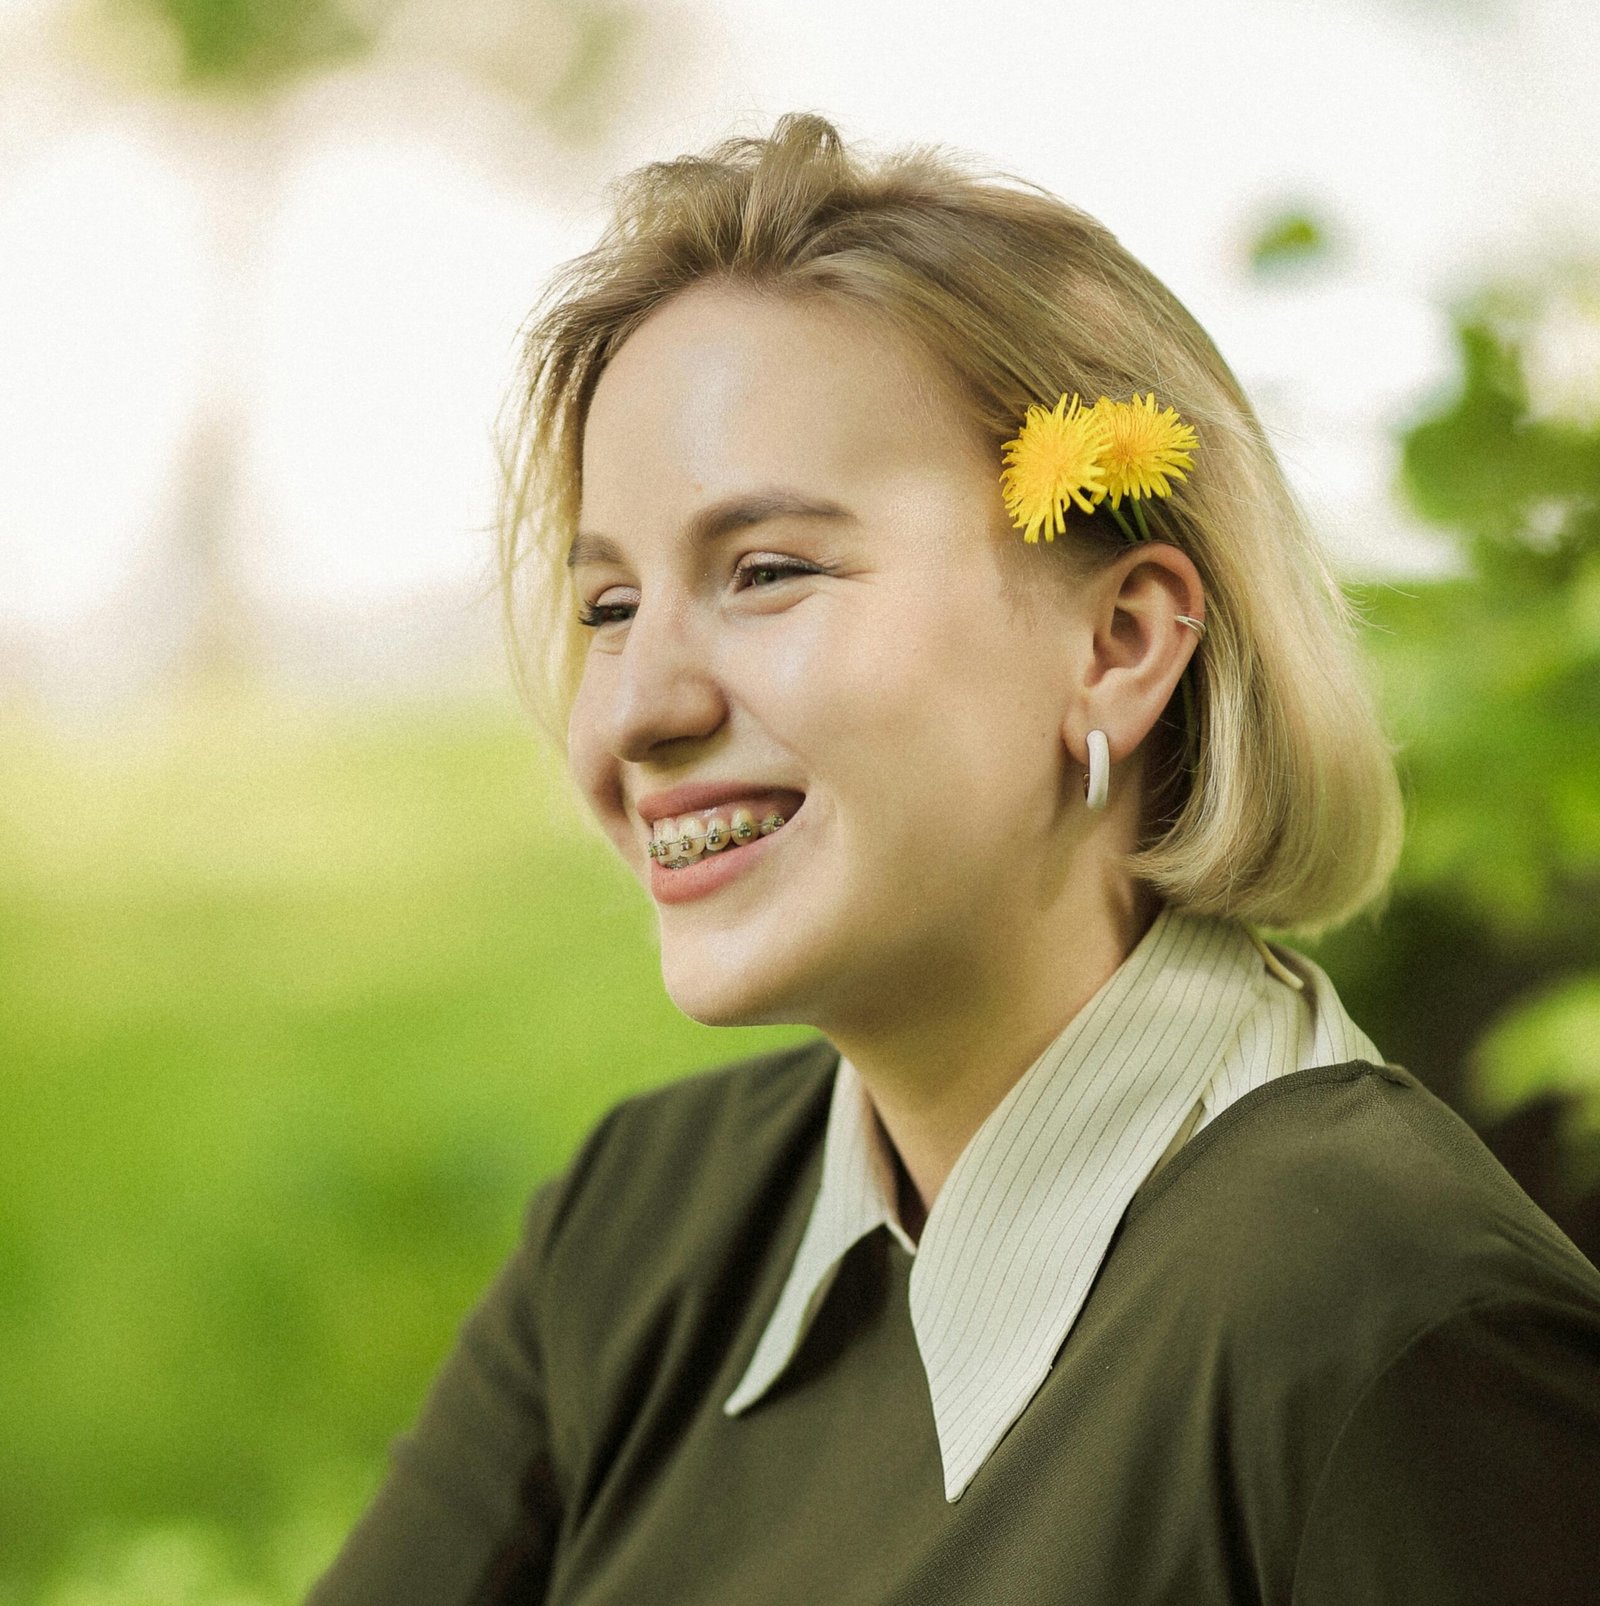 Mujer de cabello rubio, vistiendo un top top verde con cuello blanco. Ella está sonriendo y tiene una flor amarilla en el pelo. En su sonrisa tiene brackets.